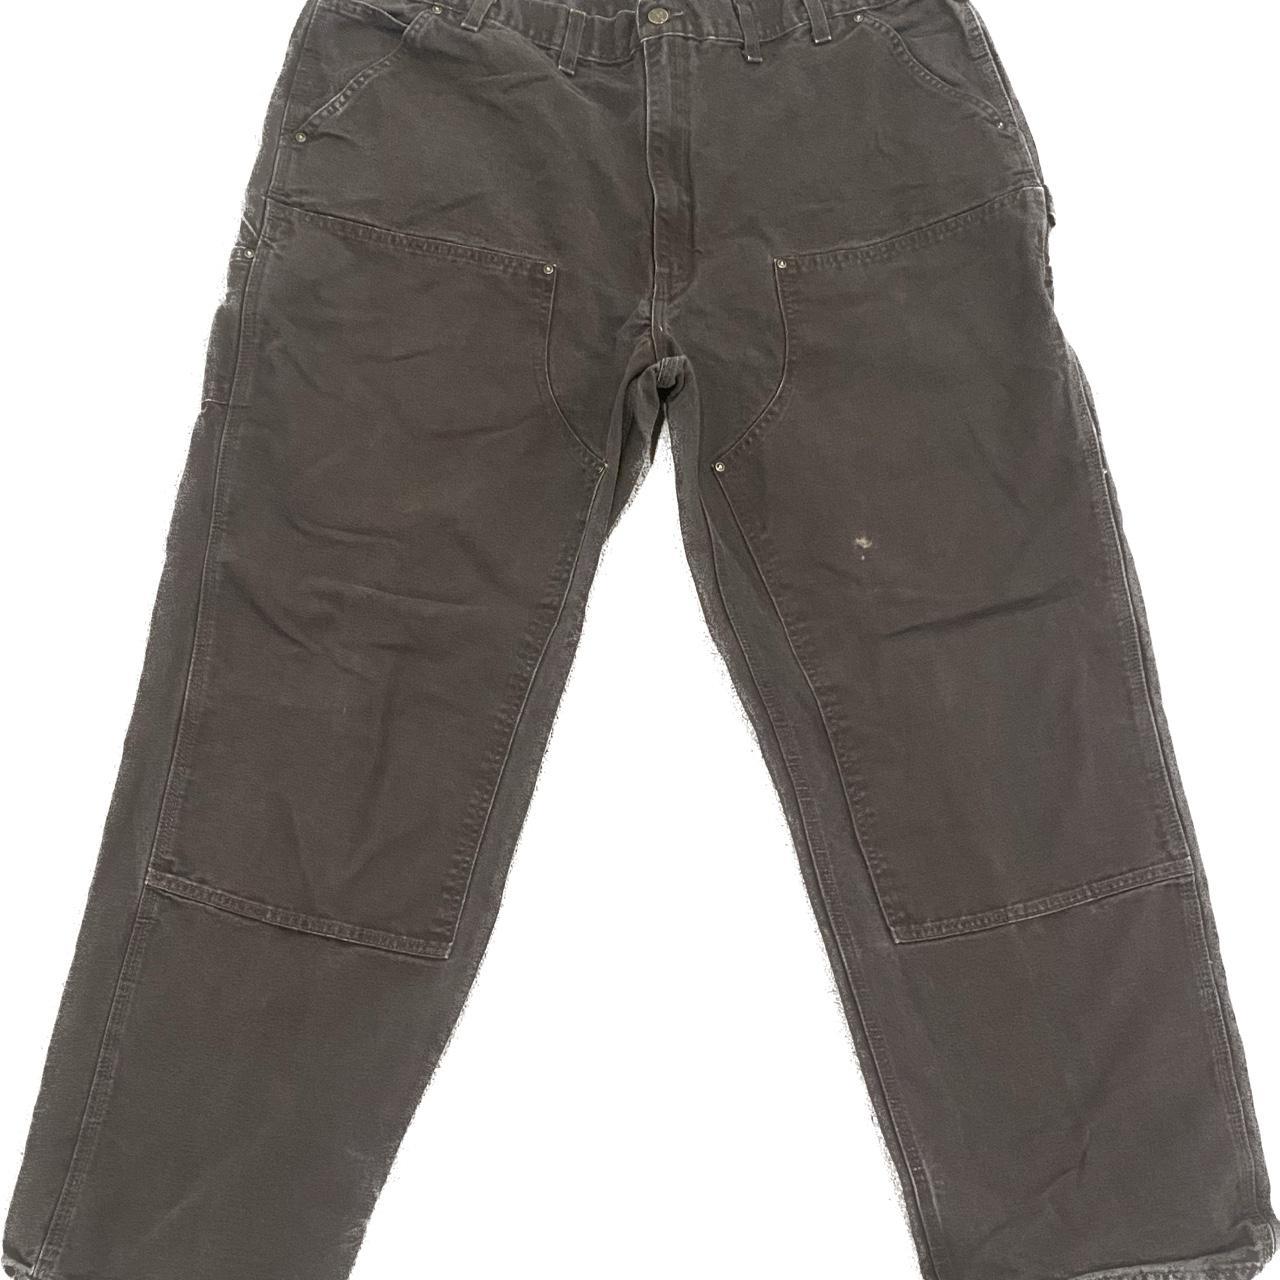 Carhartt Men's Brown Trousers